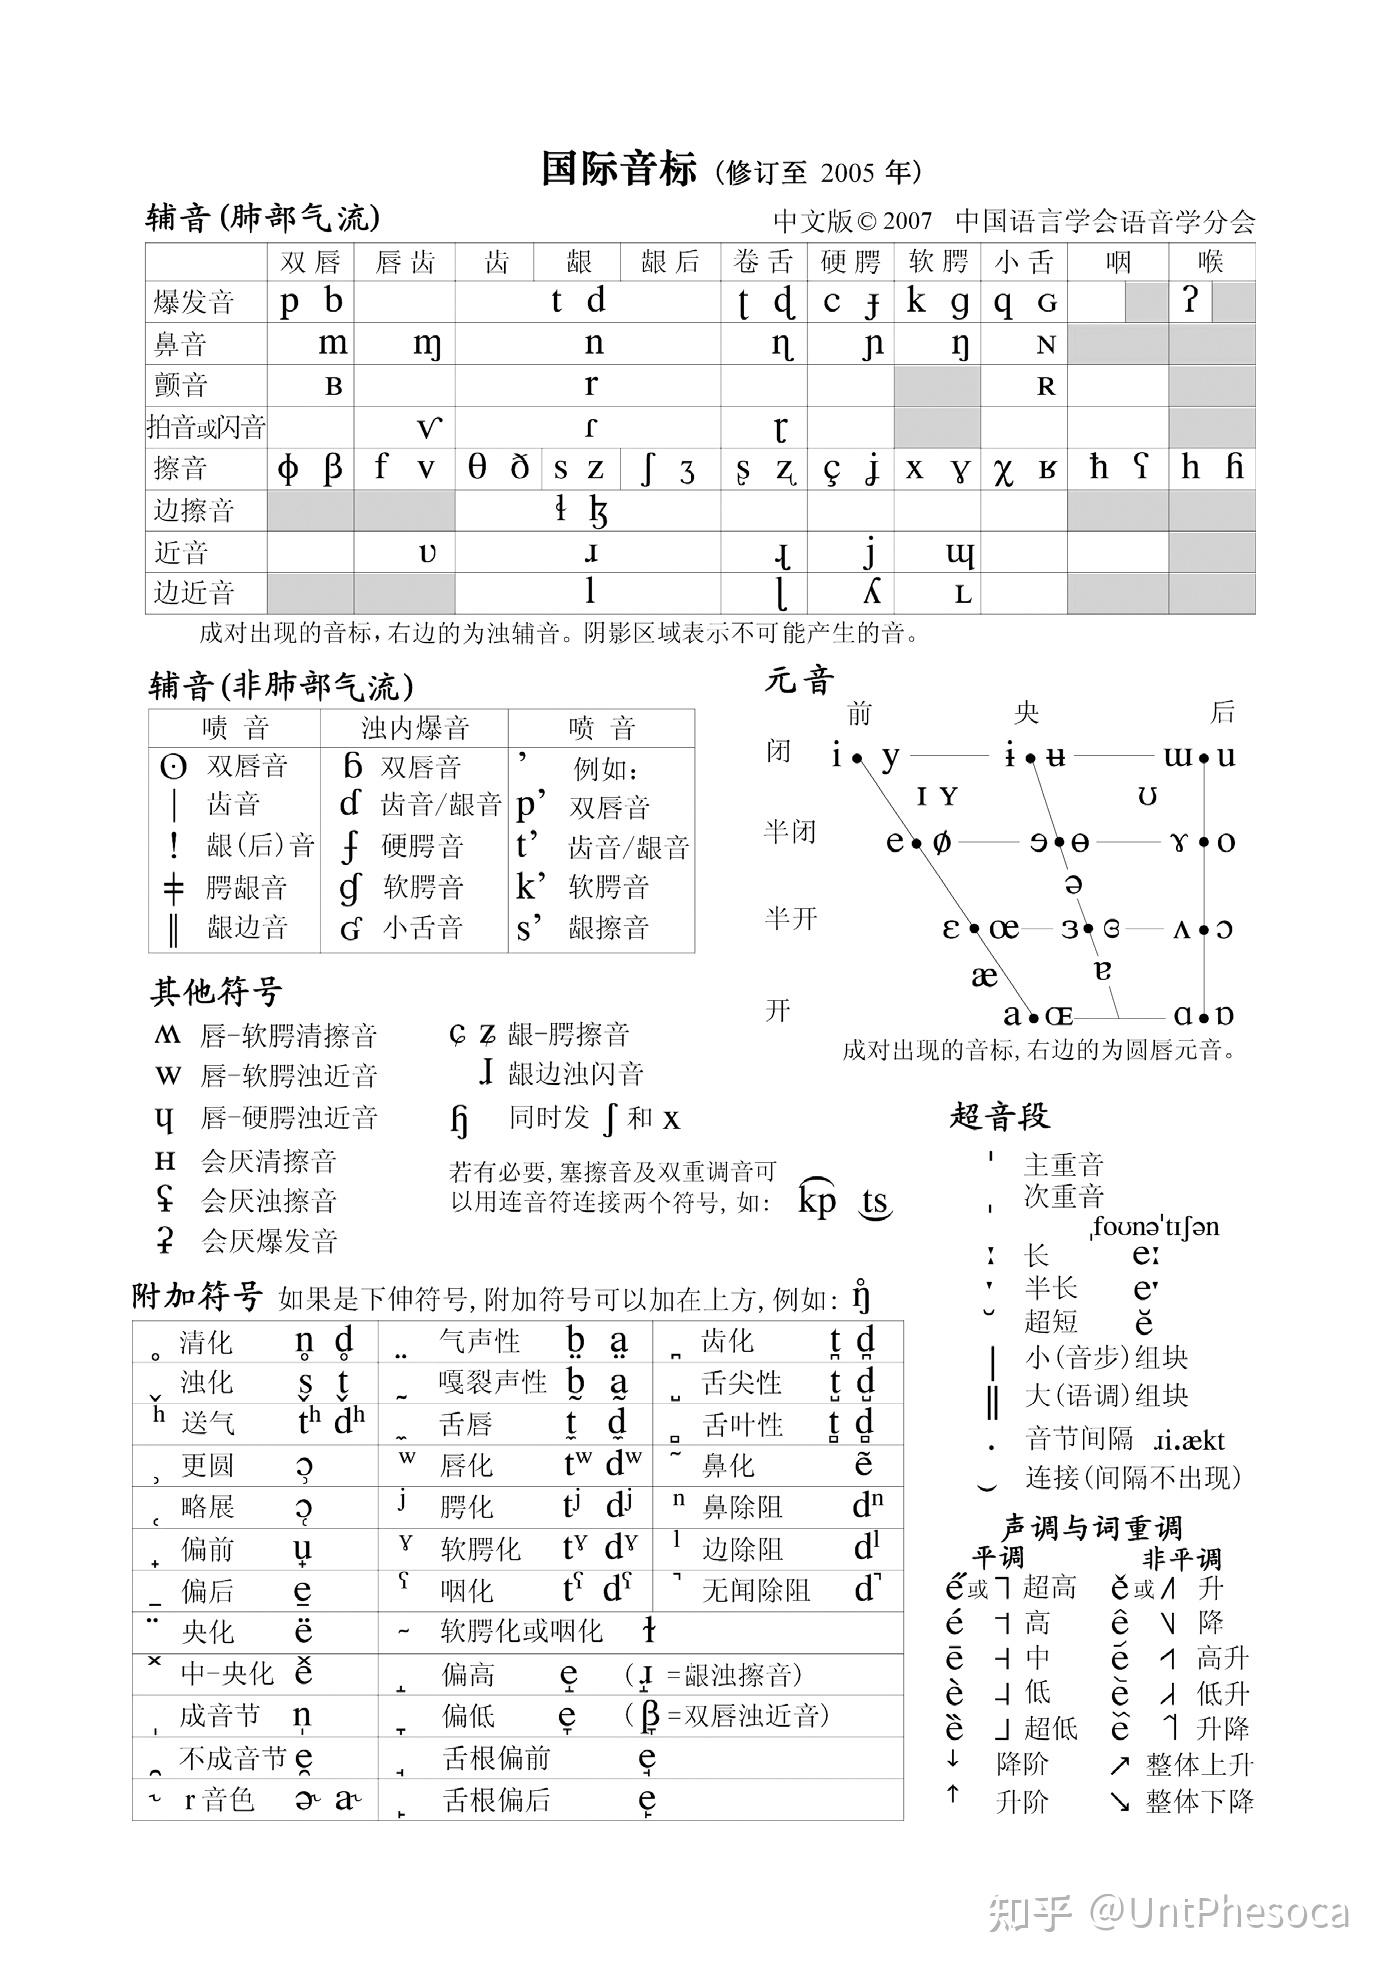 国际音标表(官方中文版)